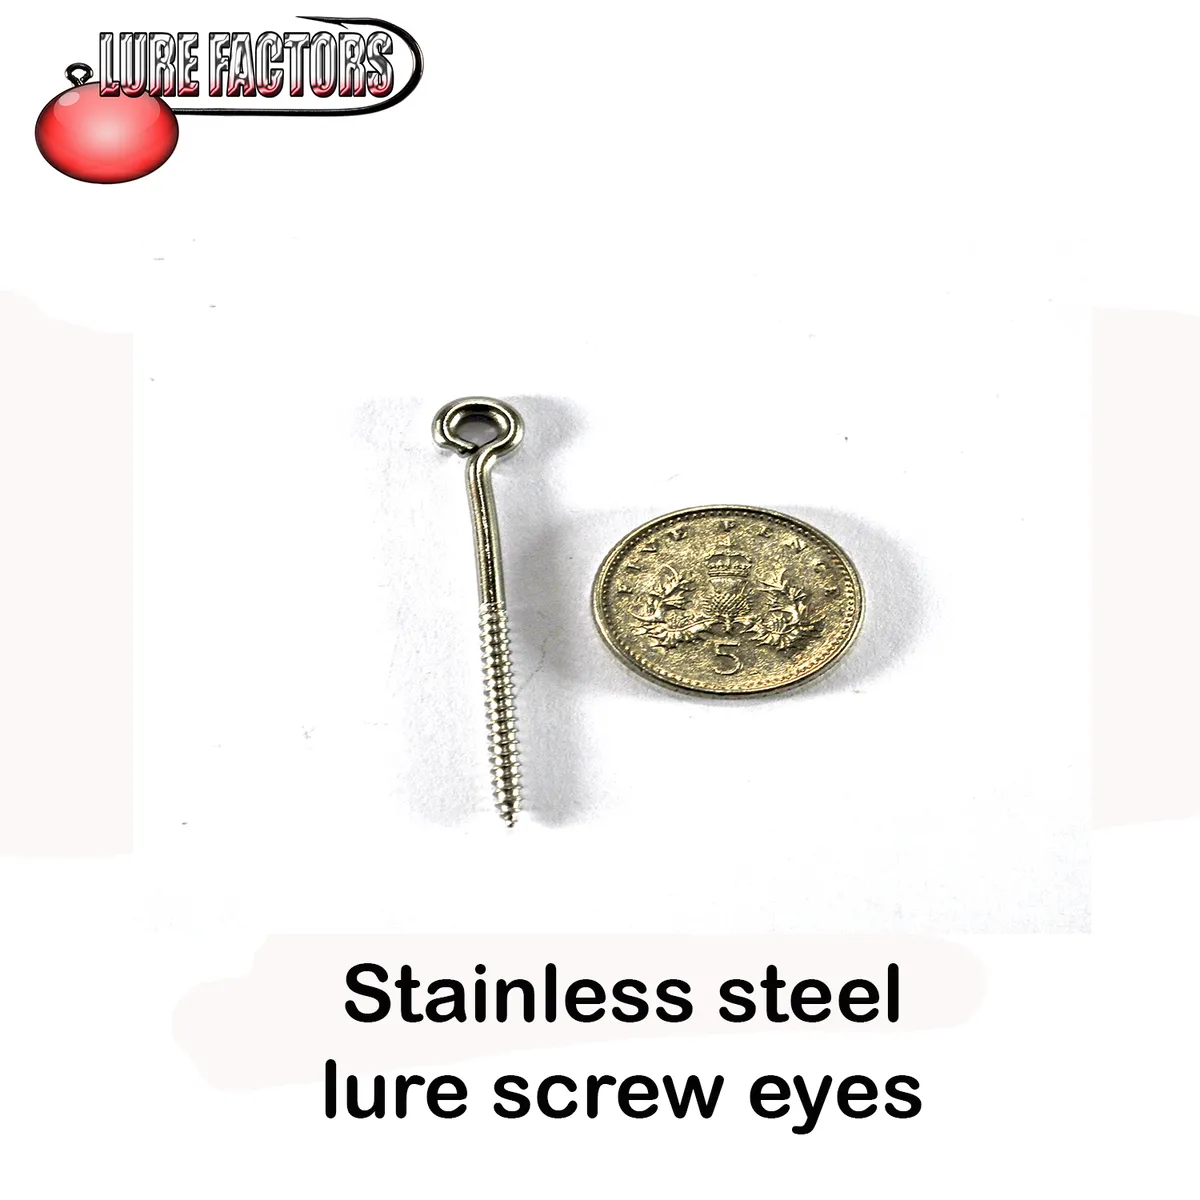 39mm Stainless steel screw eyes lure building hook hangers